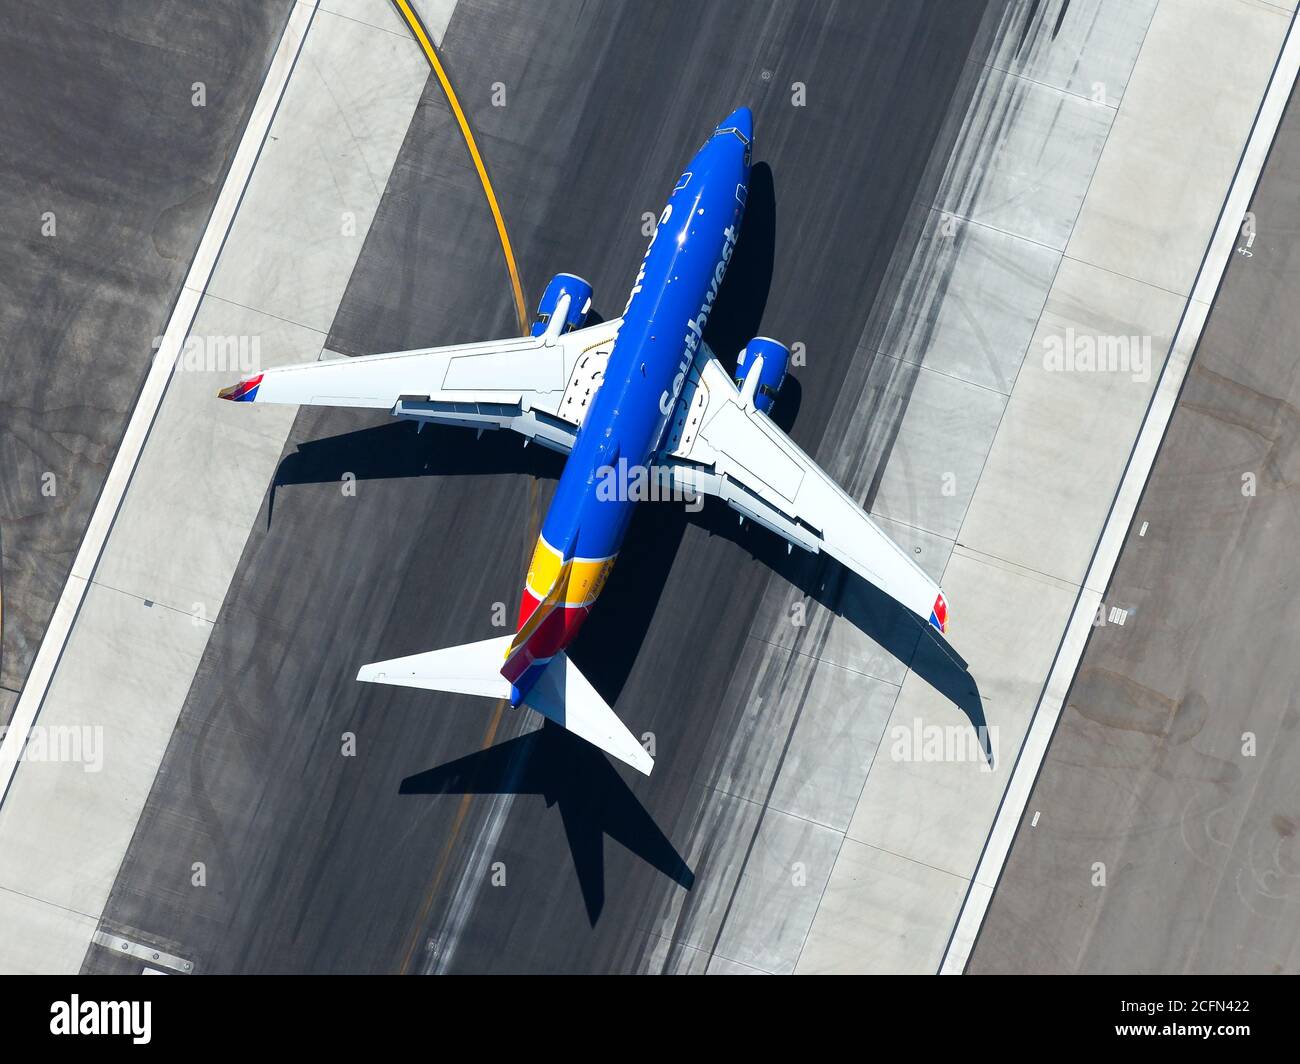 Southwest Airlines Boeing 737 bei Ankunft am Flughafen Los Angeles. Luftaufnahme der Flugbahnen über der Landebahn nach der Landung. Flügelklappen und Lamellen sichtbar. Stockfoto